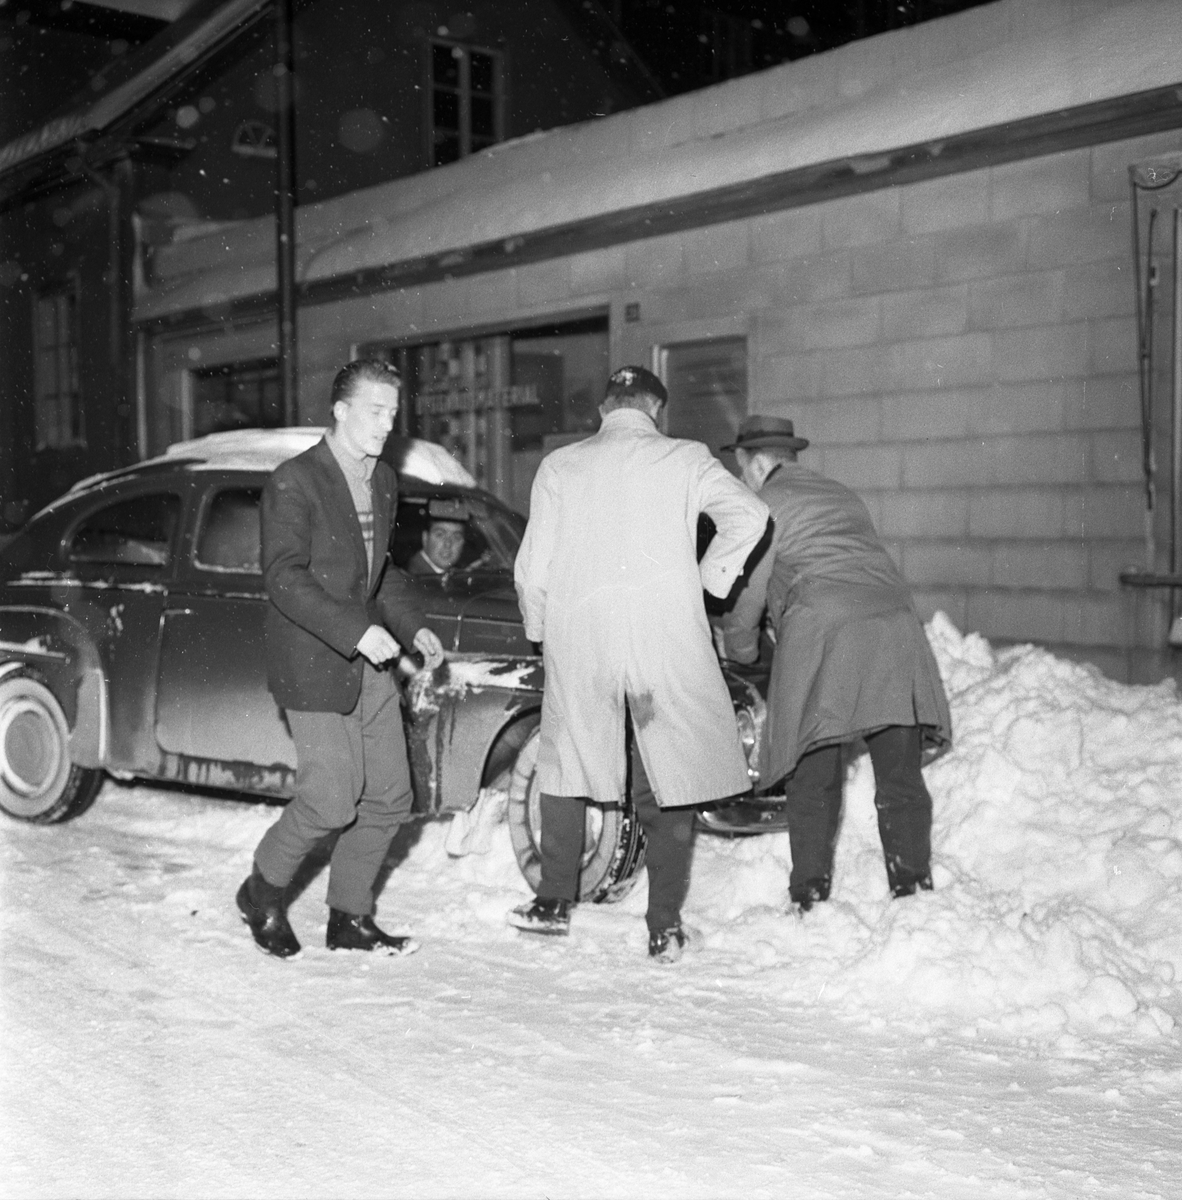 "Än slank han dit, än slank han ner i diket". Fullt så lilla gick det nu inte för bildens bilist och hjälp fick han dessutom. Men han var en av många som fick problem när Linköping drabbades av snöstorm vintern 1960.